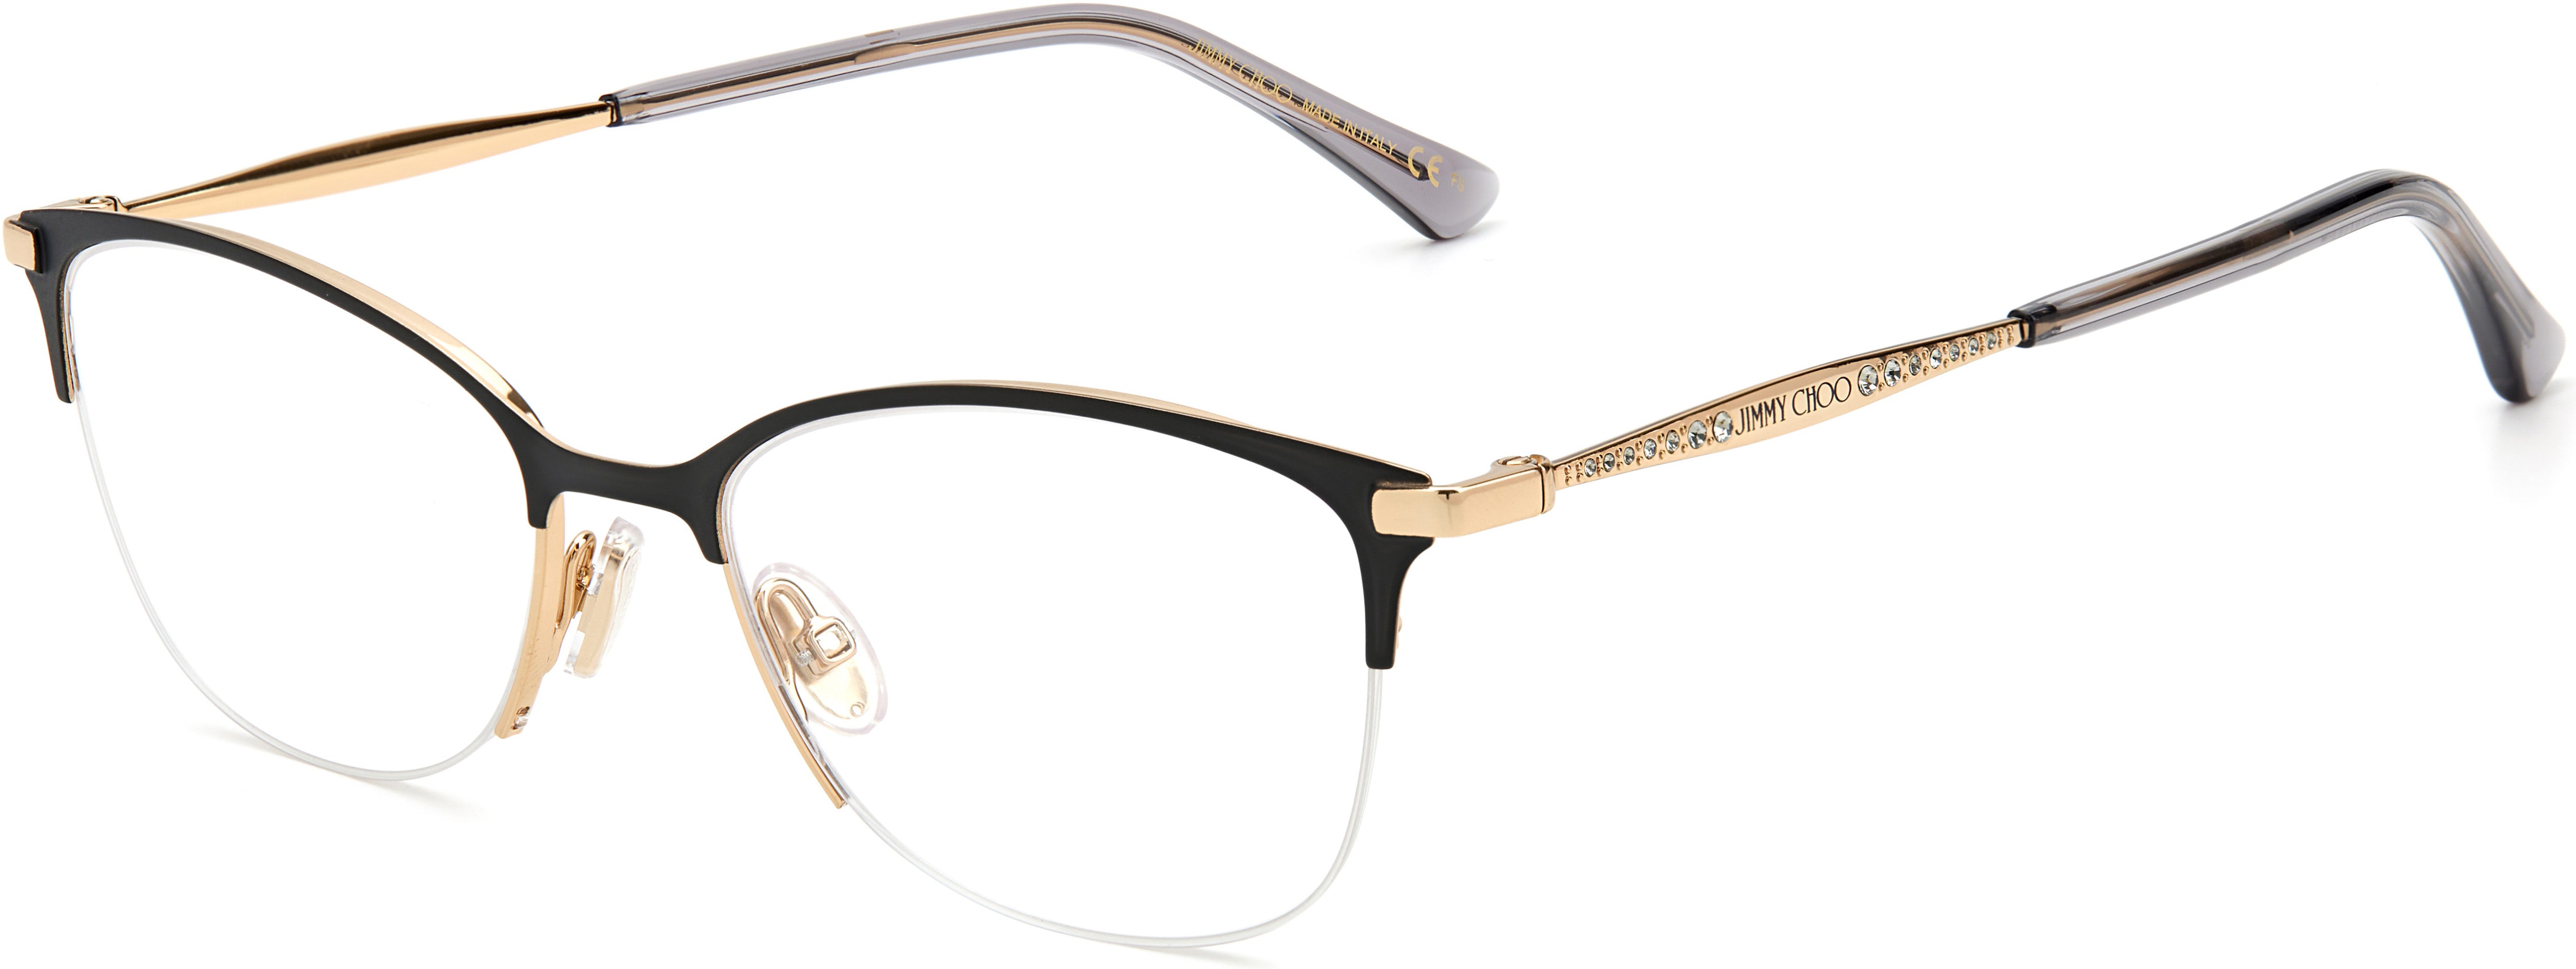  Jimmy Choo 300 Rectangular Eyeglasses 02M2-02M2  Black Gold (00 Demo Lens)